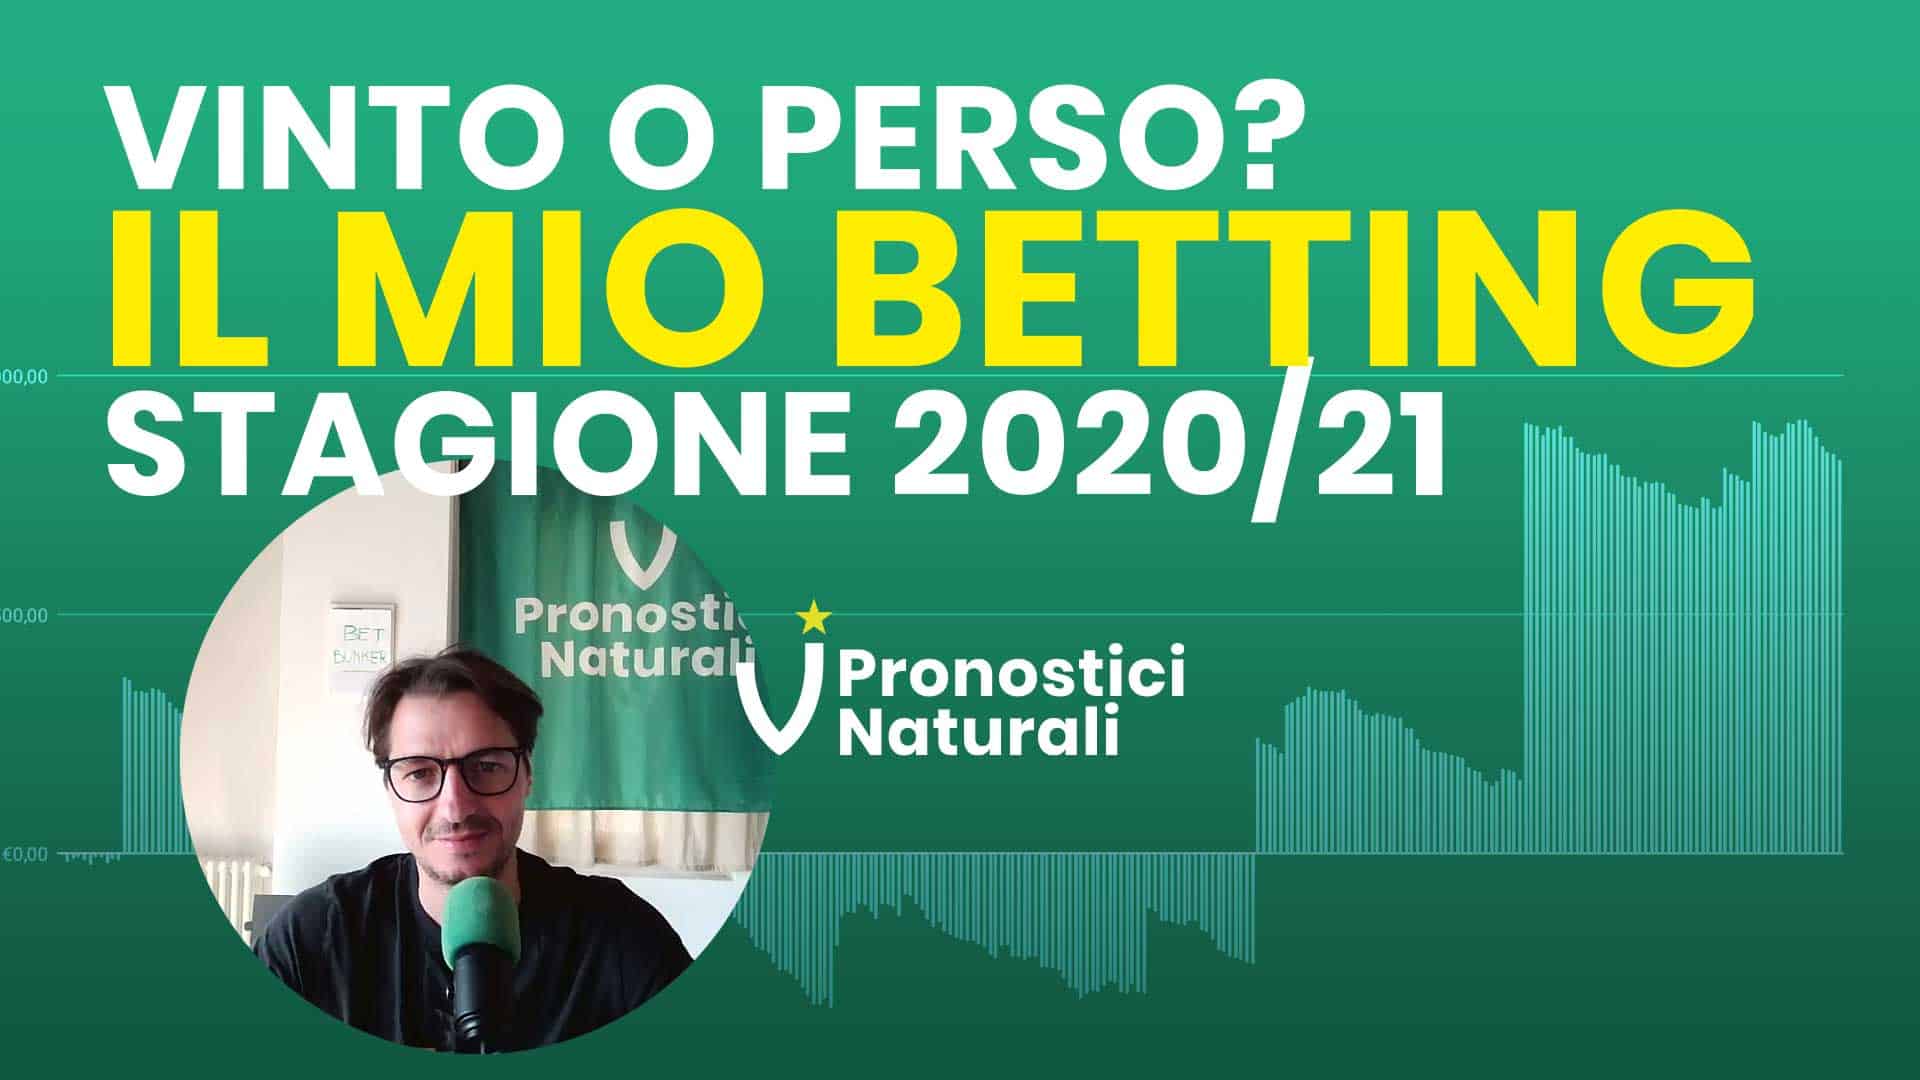 Pronostici Naturali Video Speciele Analisi Finale Betting Calcio Stagione 2020-2021